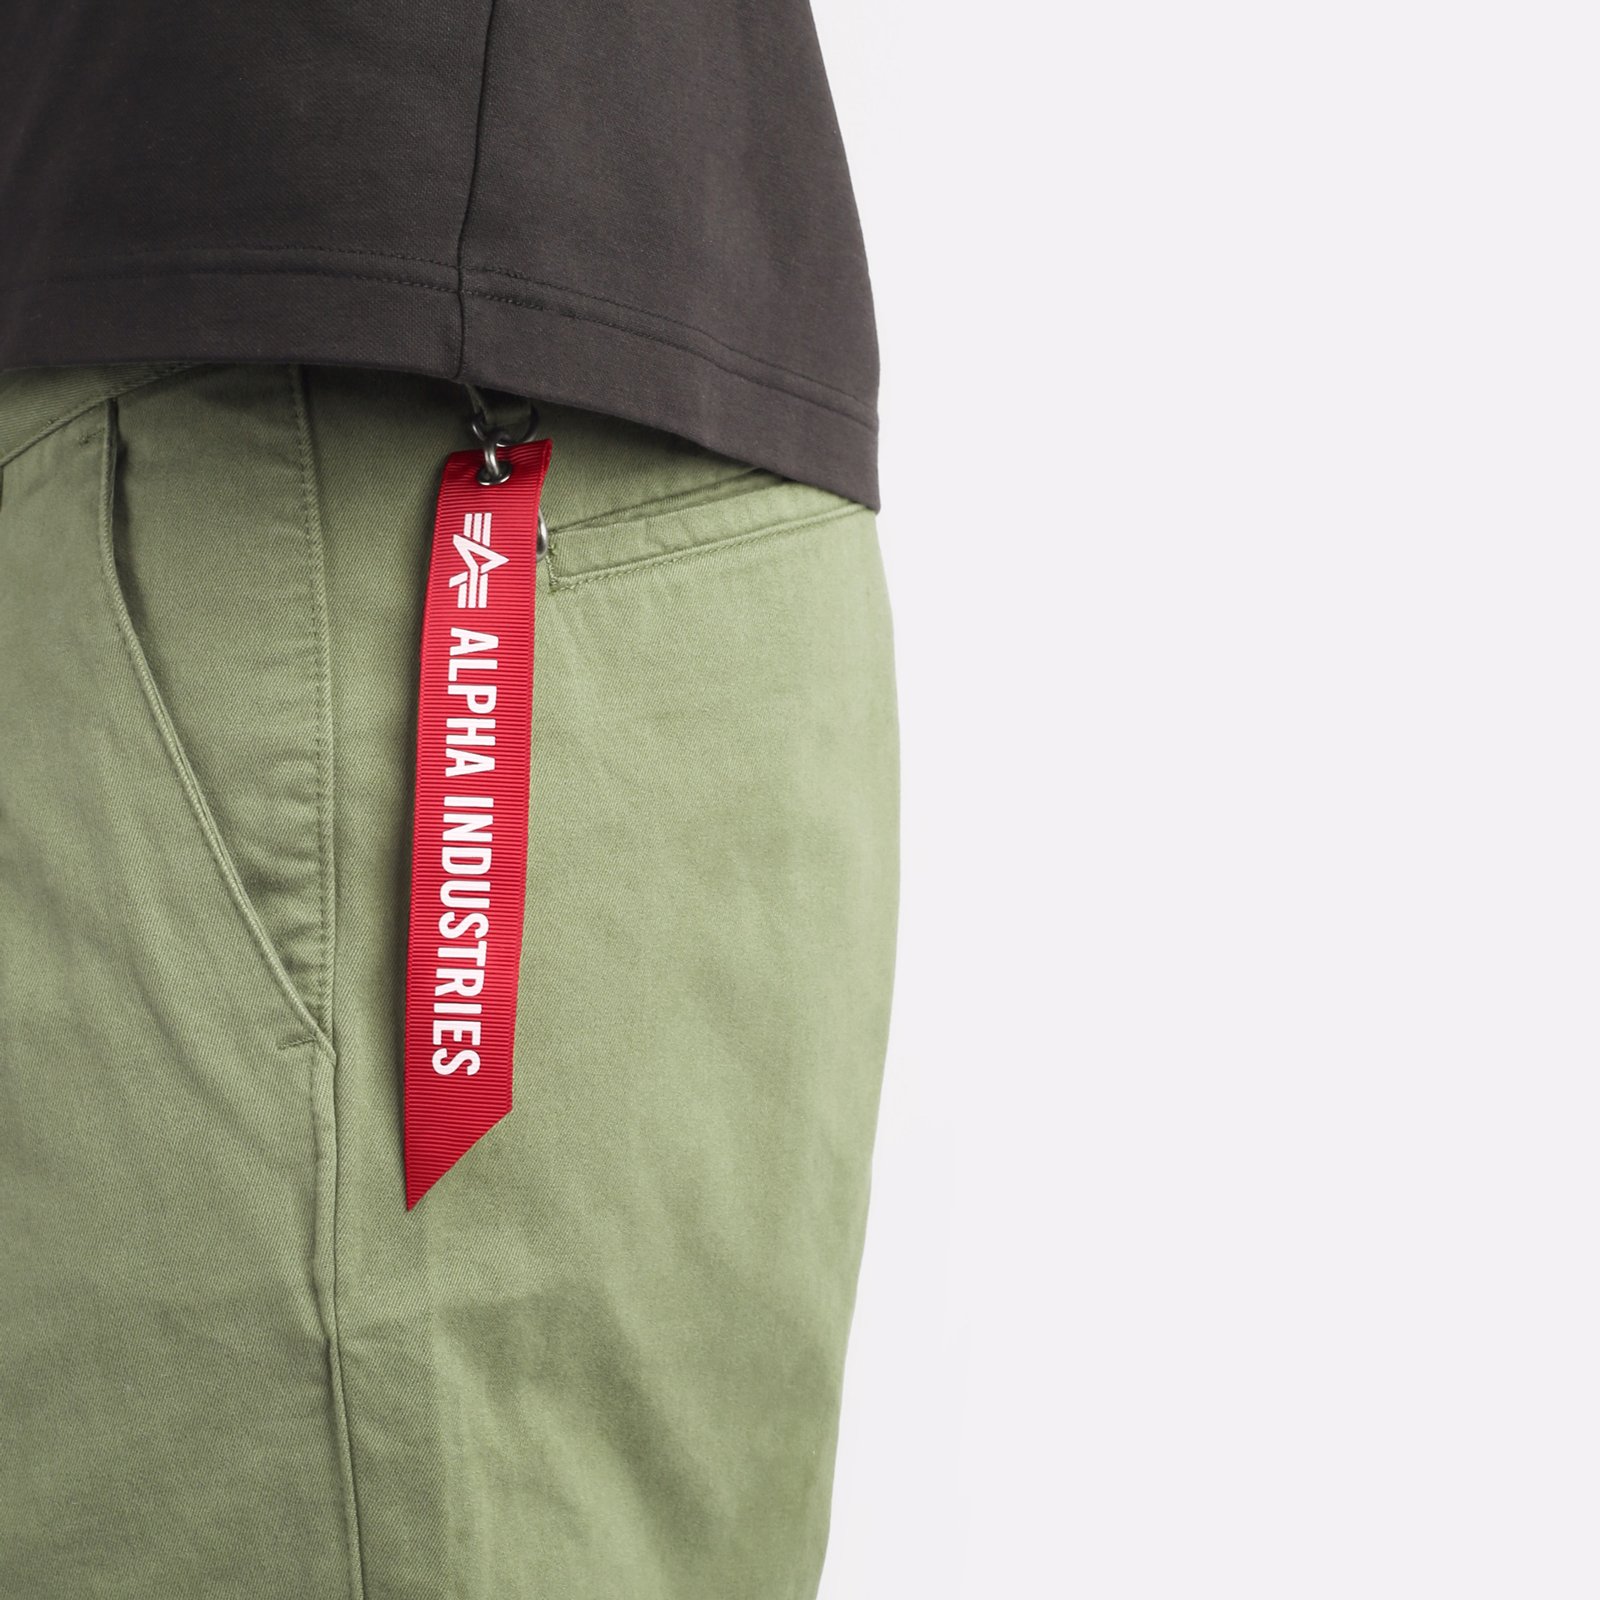 мужские брюки Alpha Industries Classic Trousers  (MBC53500CO-green)  - цена, описание, фото 4